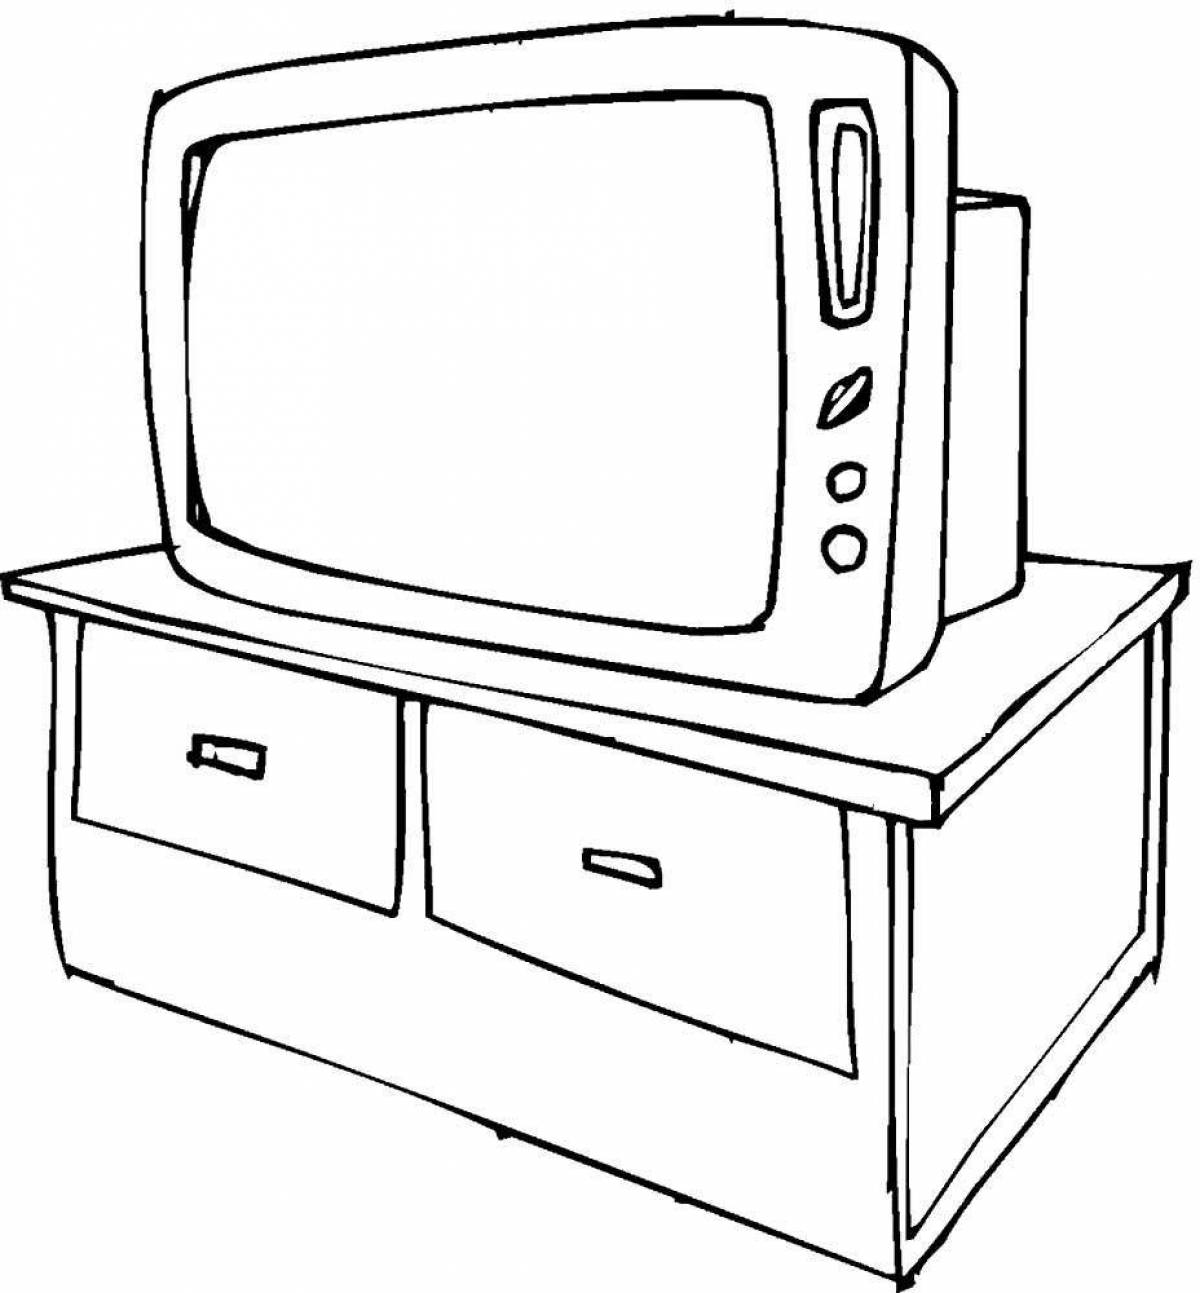 Рисунок тв мена 3.0. Раскраска телевизор. Раскраска мебель для малышей. Телевизор для раскрашивания детям. Контур телевизора для детей.